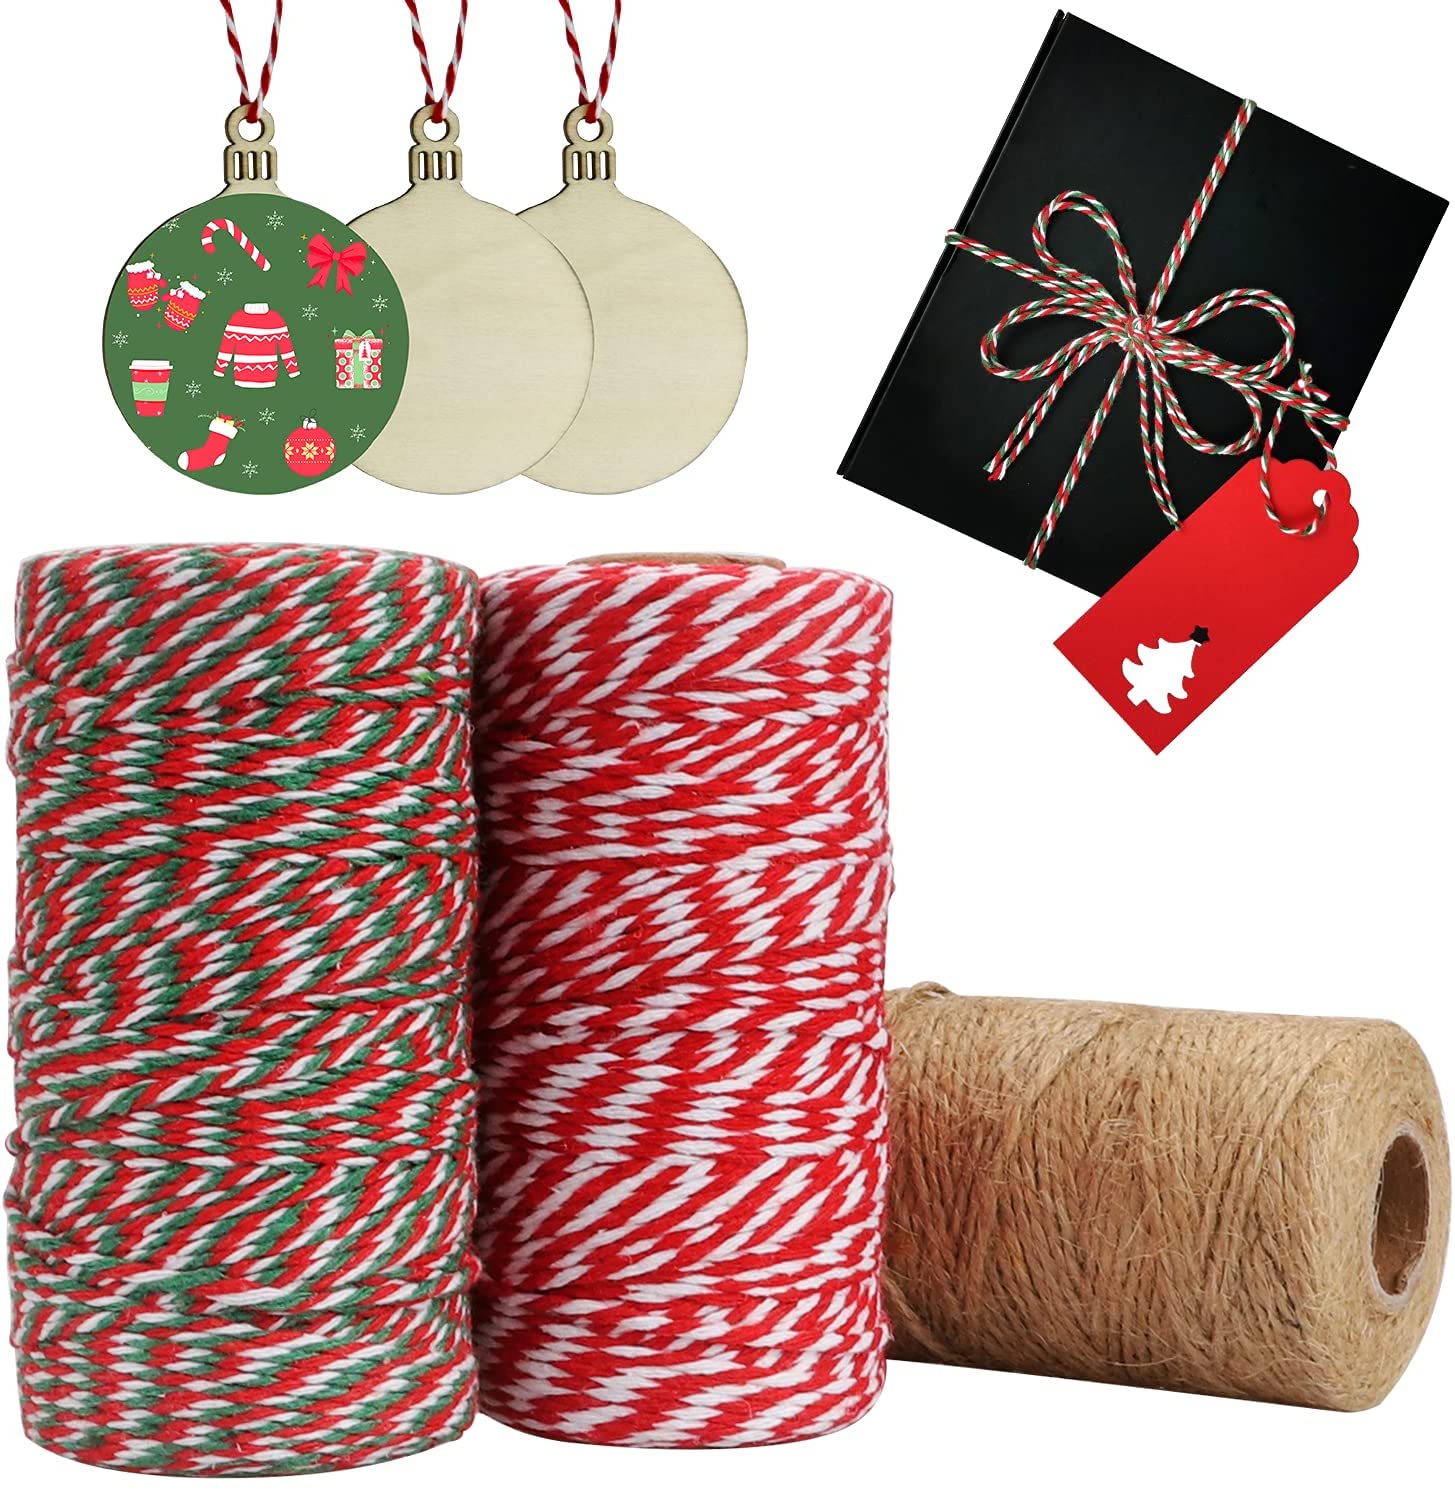 红白棉绳制作圣诞树吊卡绳DIY手工编织双色绳子现货供应